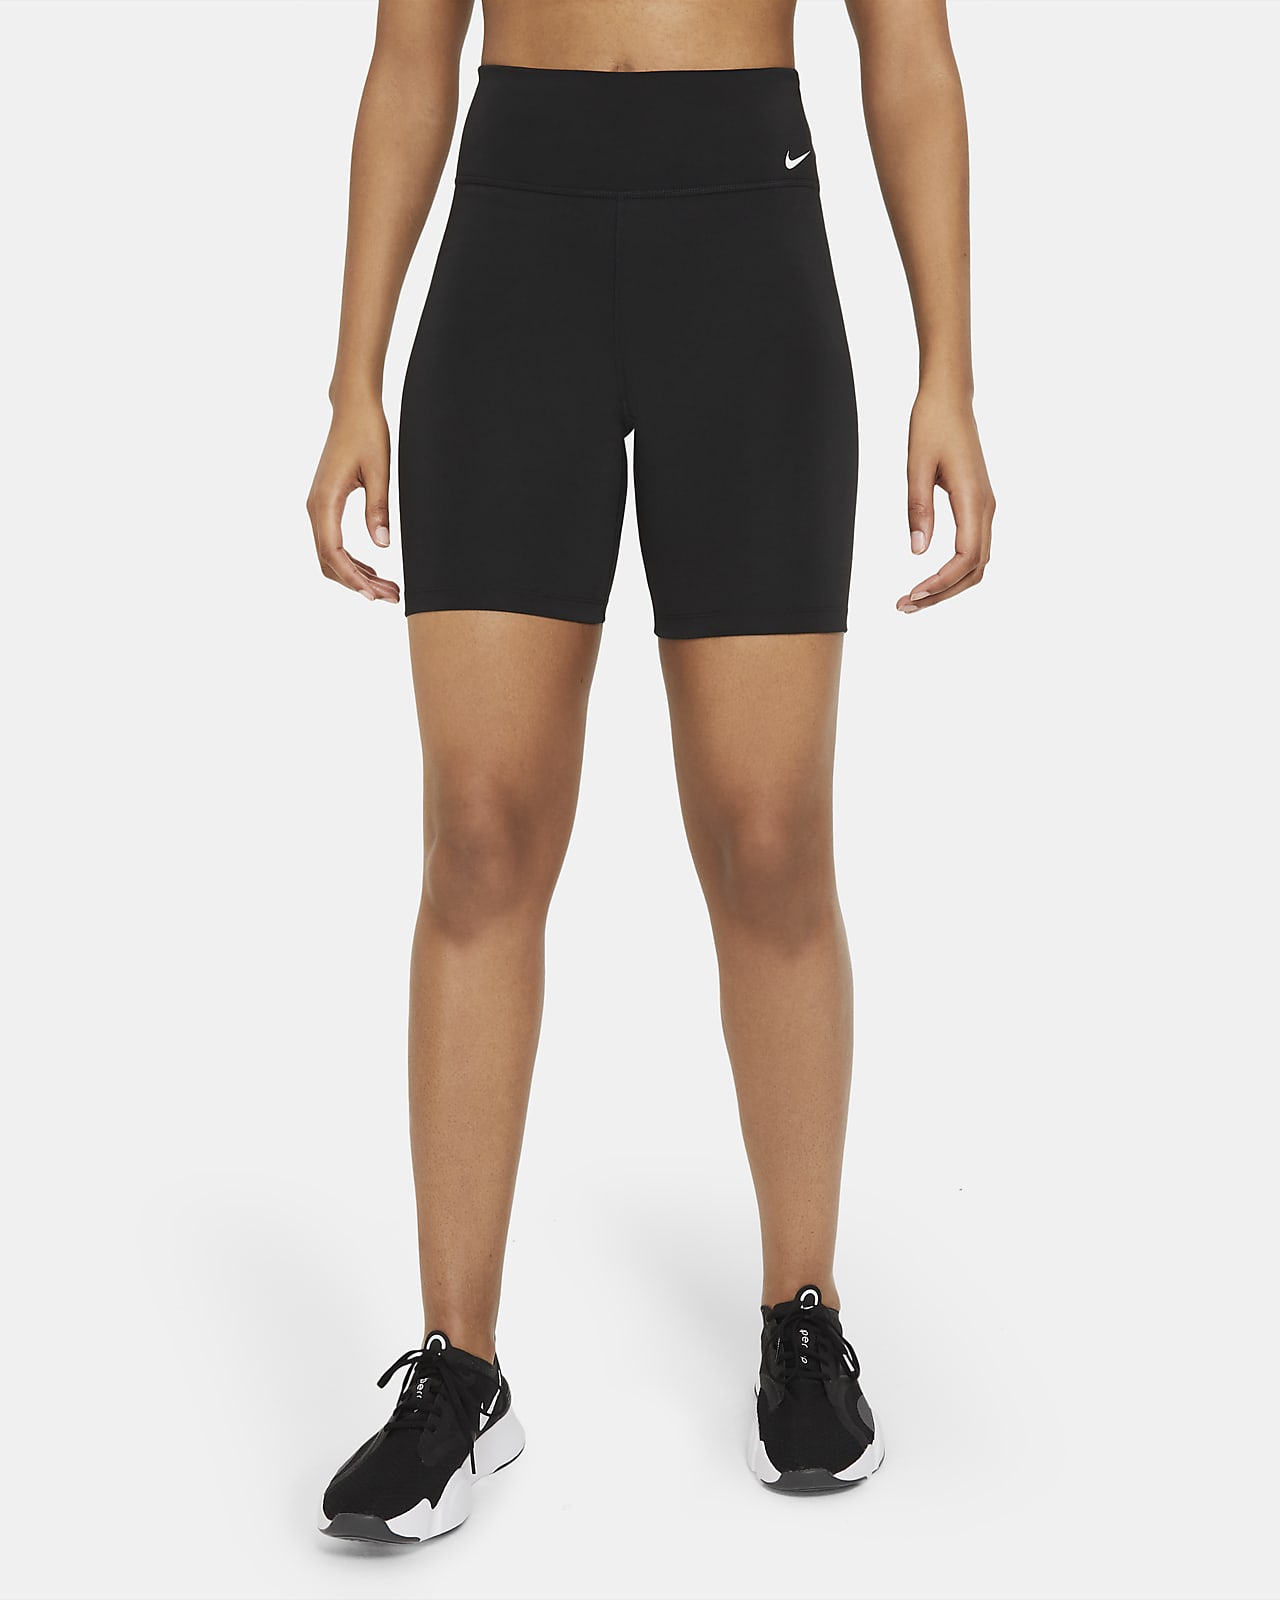 Shorts modello ciclista a vita media 18 cm Nike One – Donna